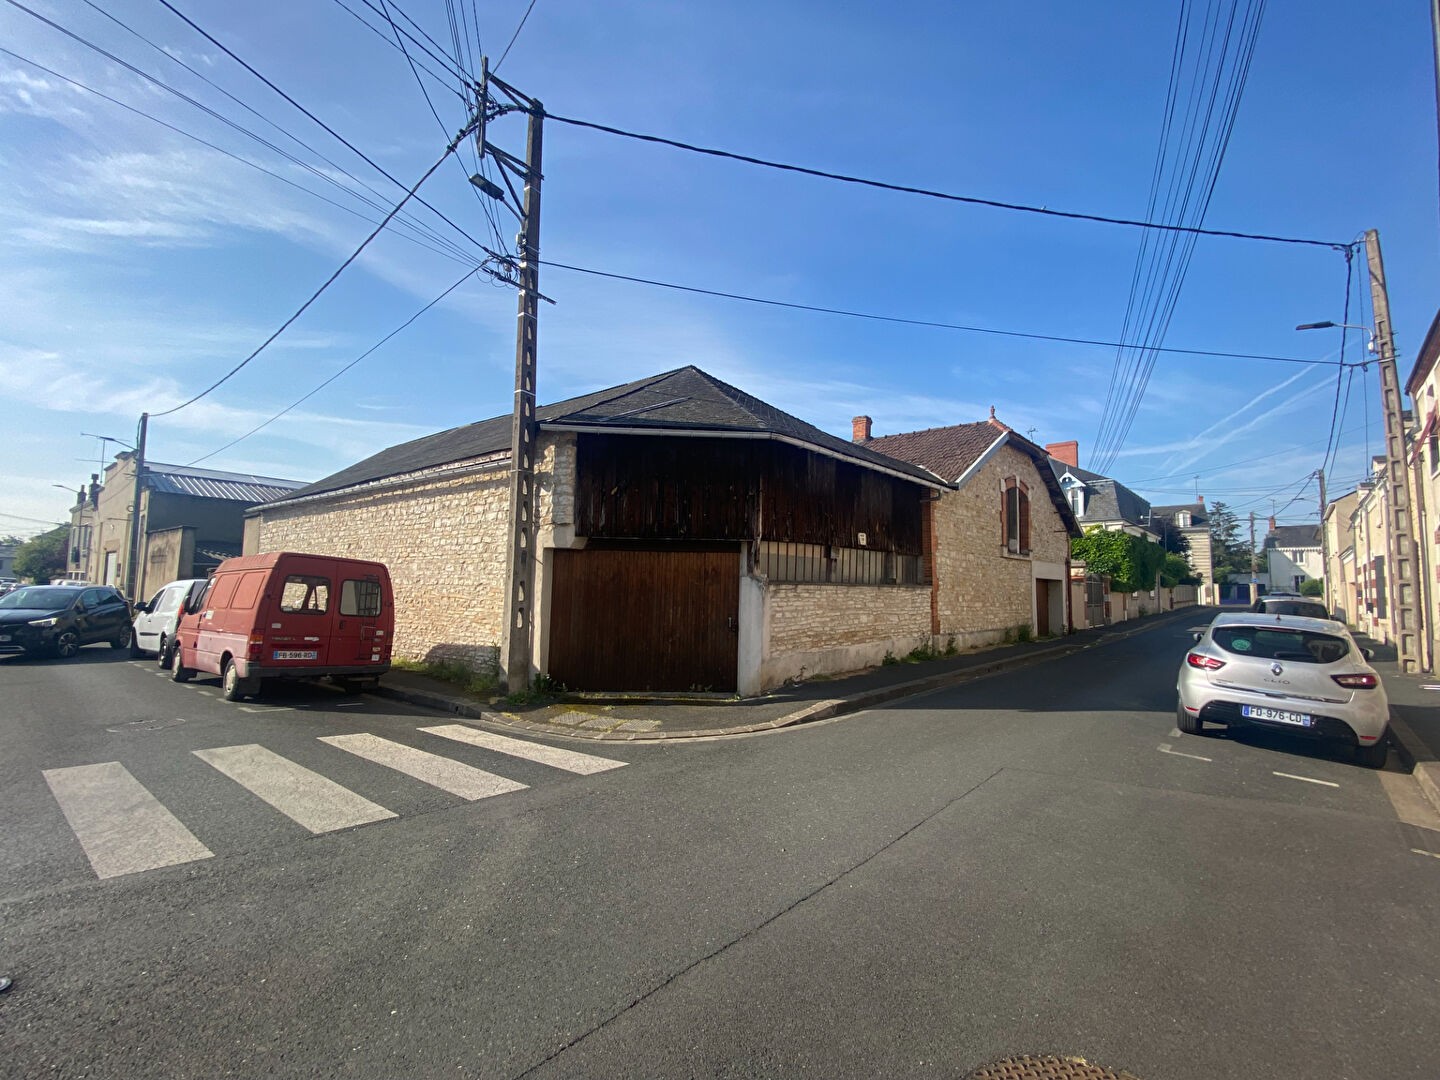 Vente Garage / Parking à Châteauroux 0 pièce